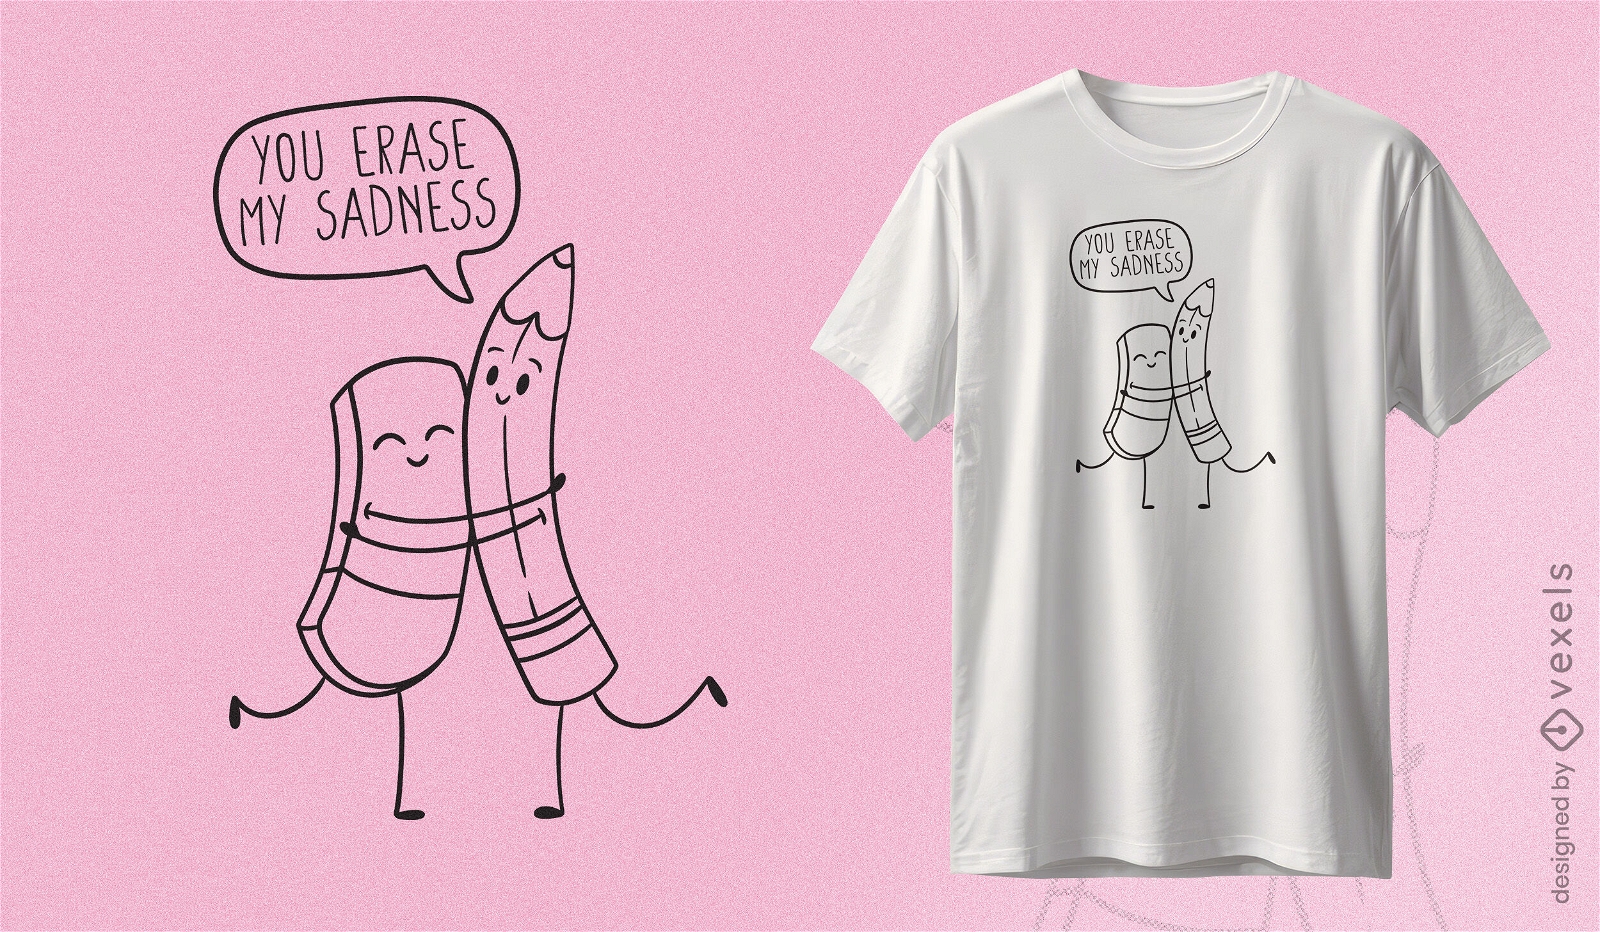 Pencil eraser friendship t-shirt design